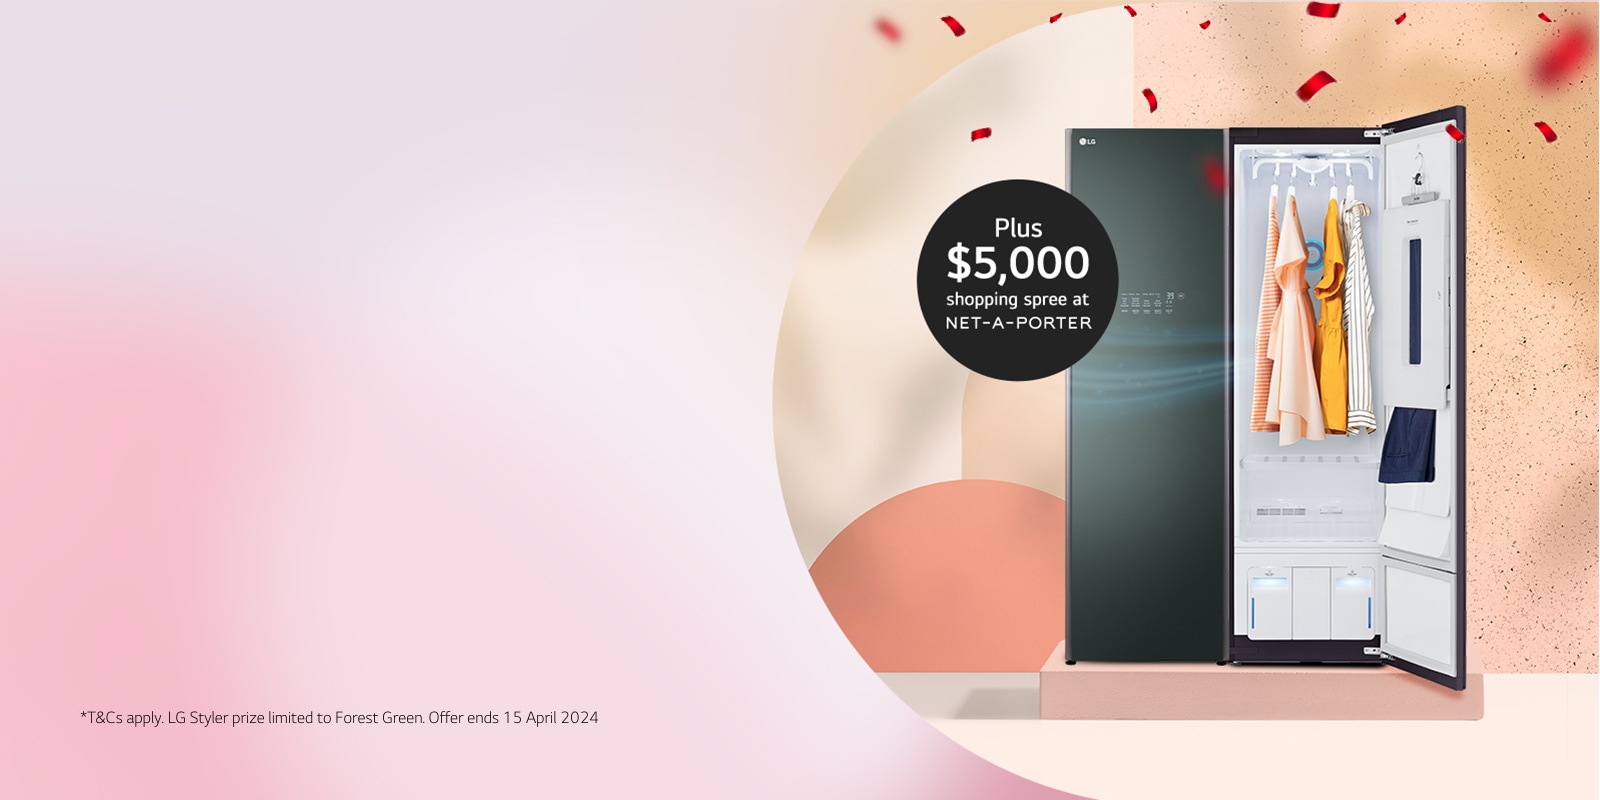 Win an LG Styler plus $5,000 NET-A-PORTER Shopping Spree*1